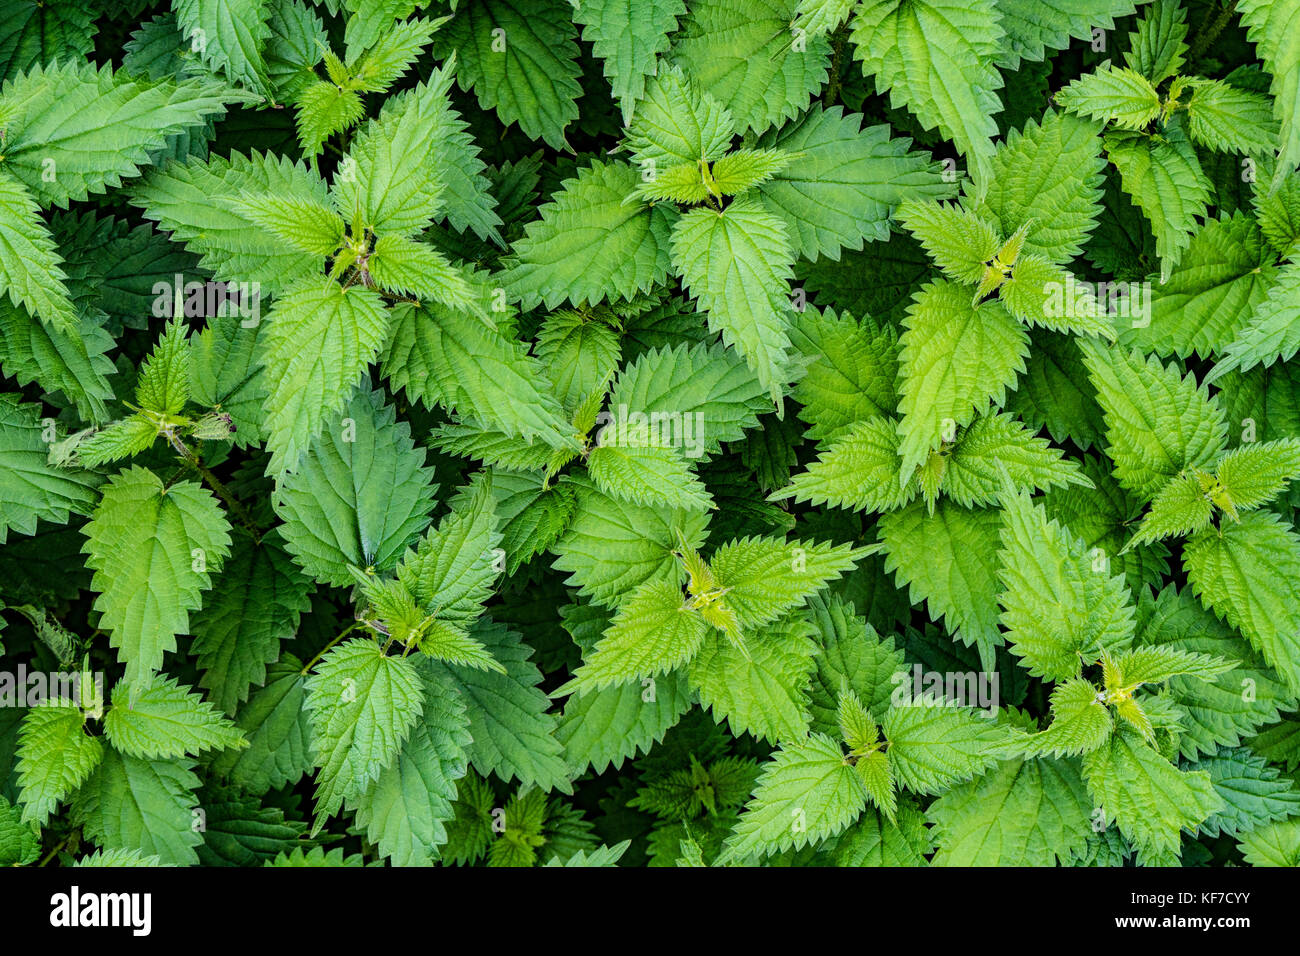 Hintergrund der grünen Brennessel Blätter Stockfoto